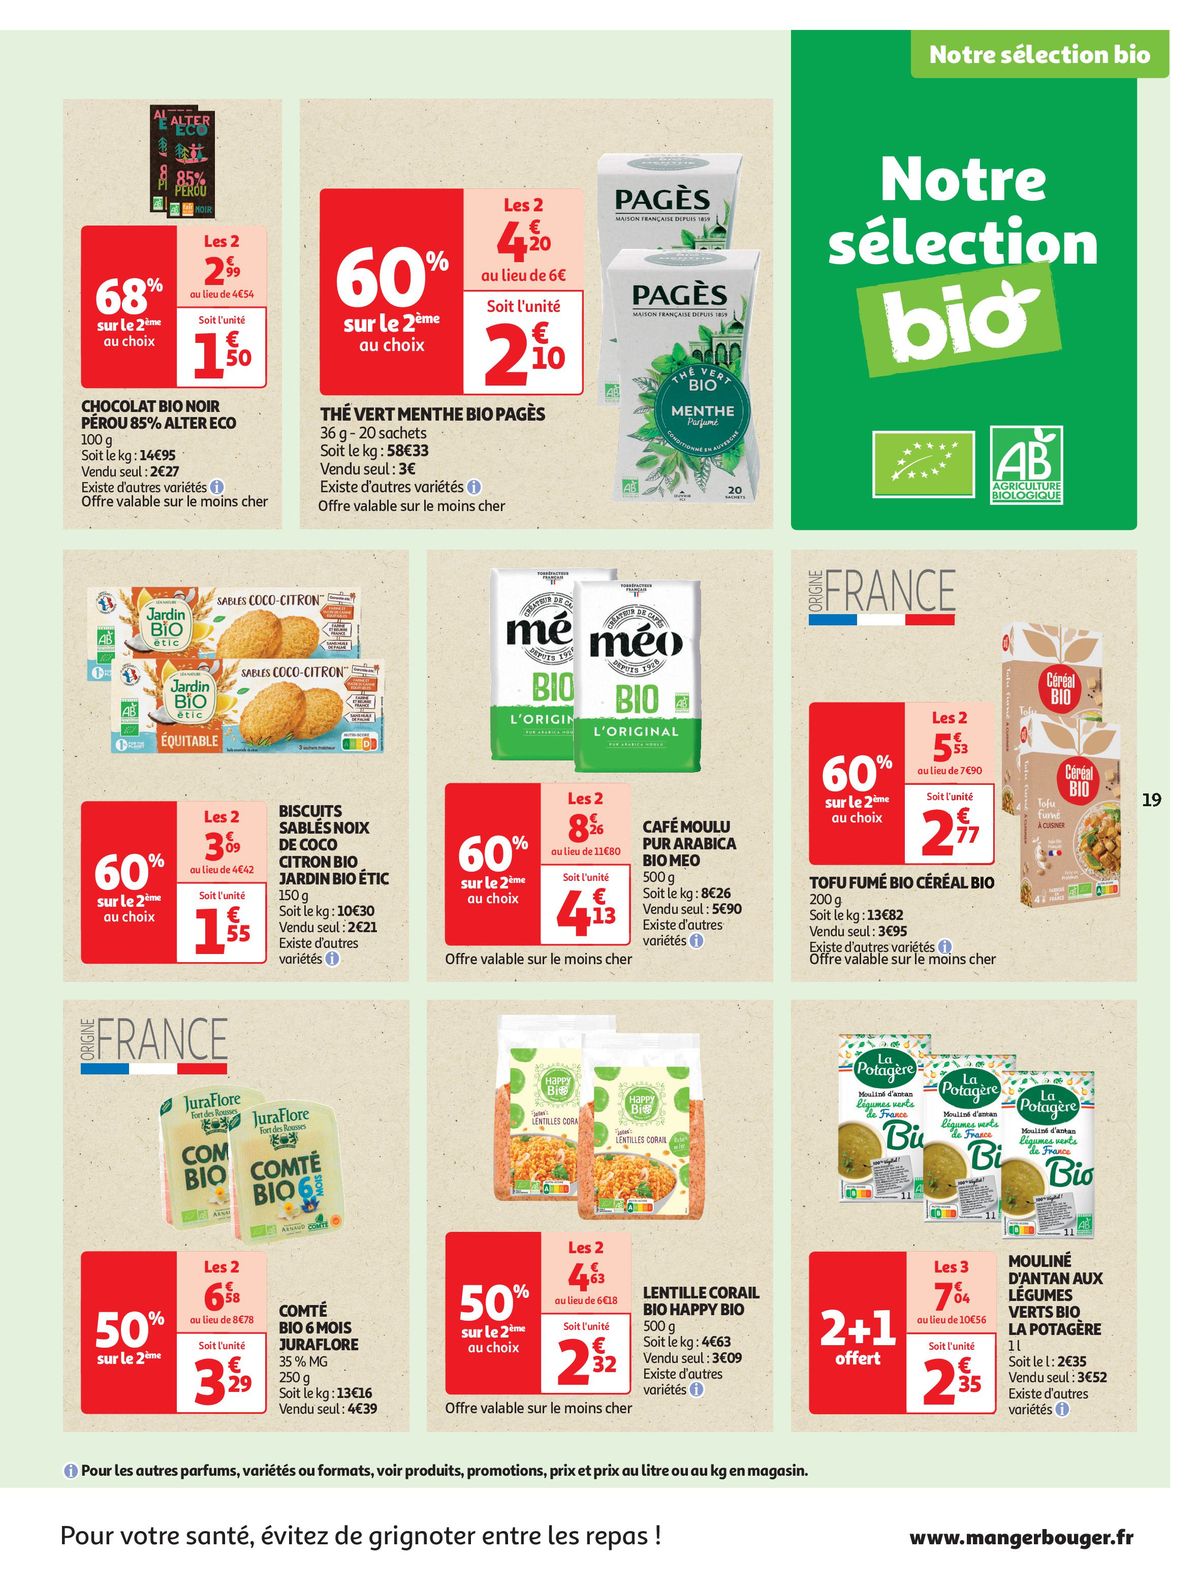 Catalogue Spécial Cuisine Gourmane dans votre supermarché, page 00019